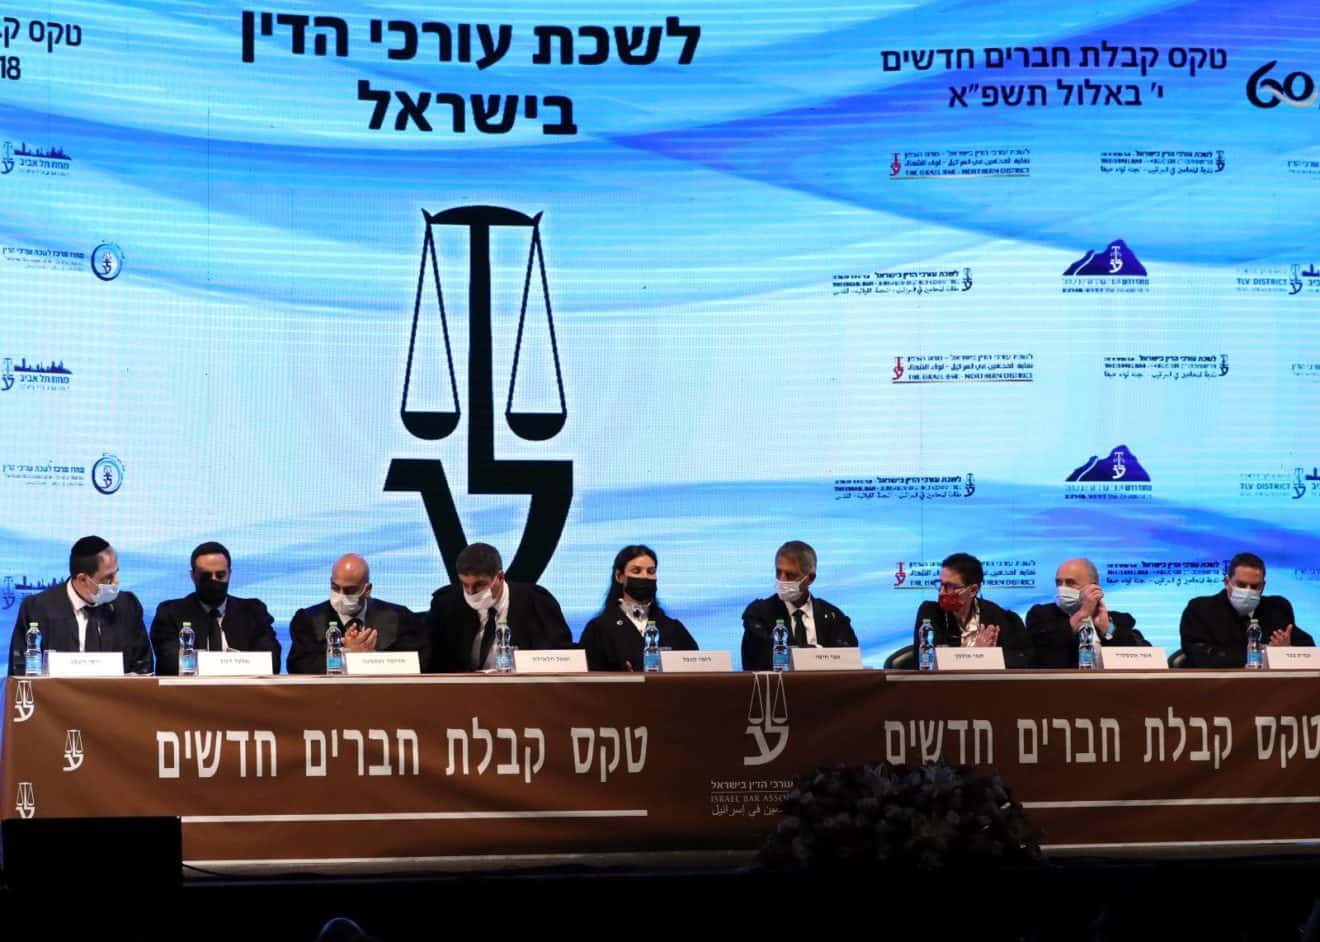 1,292 מתמחים הוסמכו כעורכי דין חדשים בטקס שהתקיים אמש בבנייני האומה בירושלים